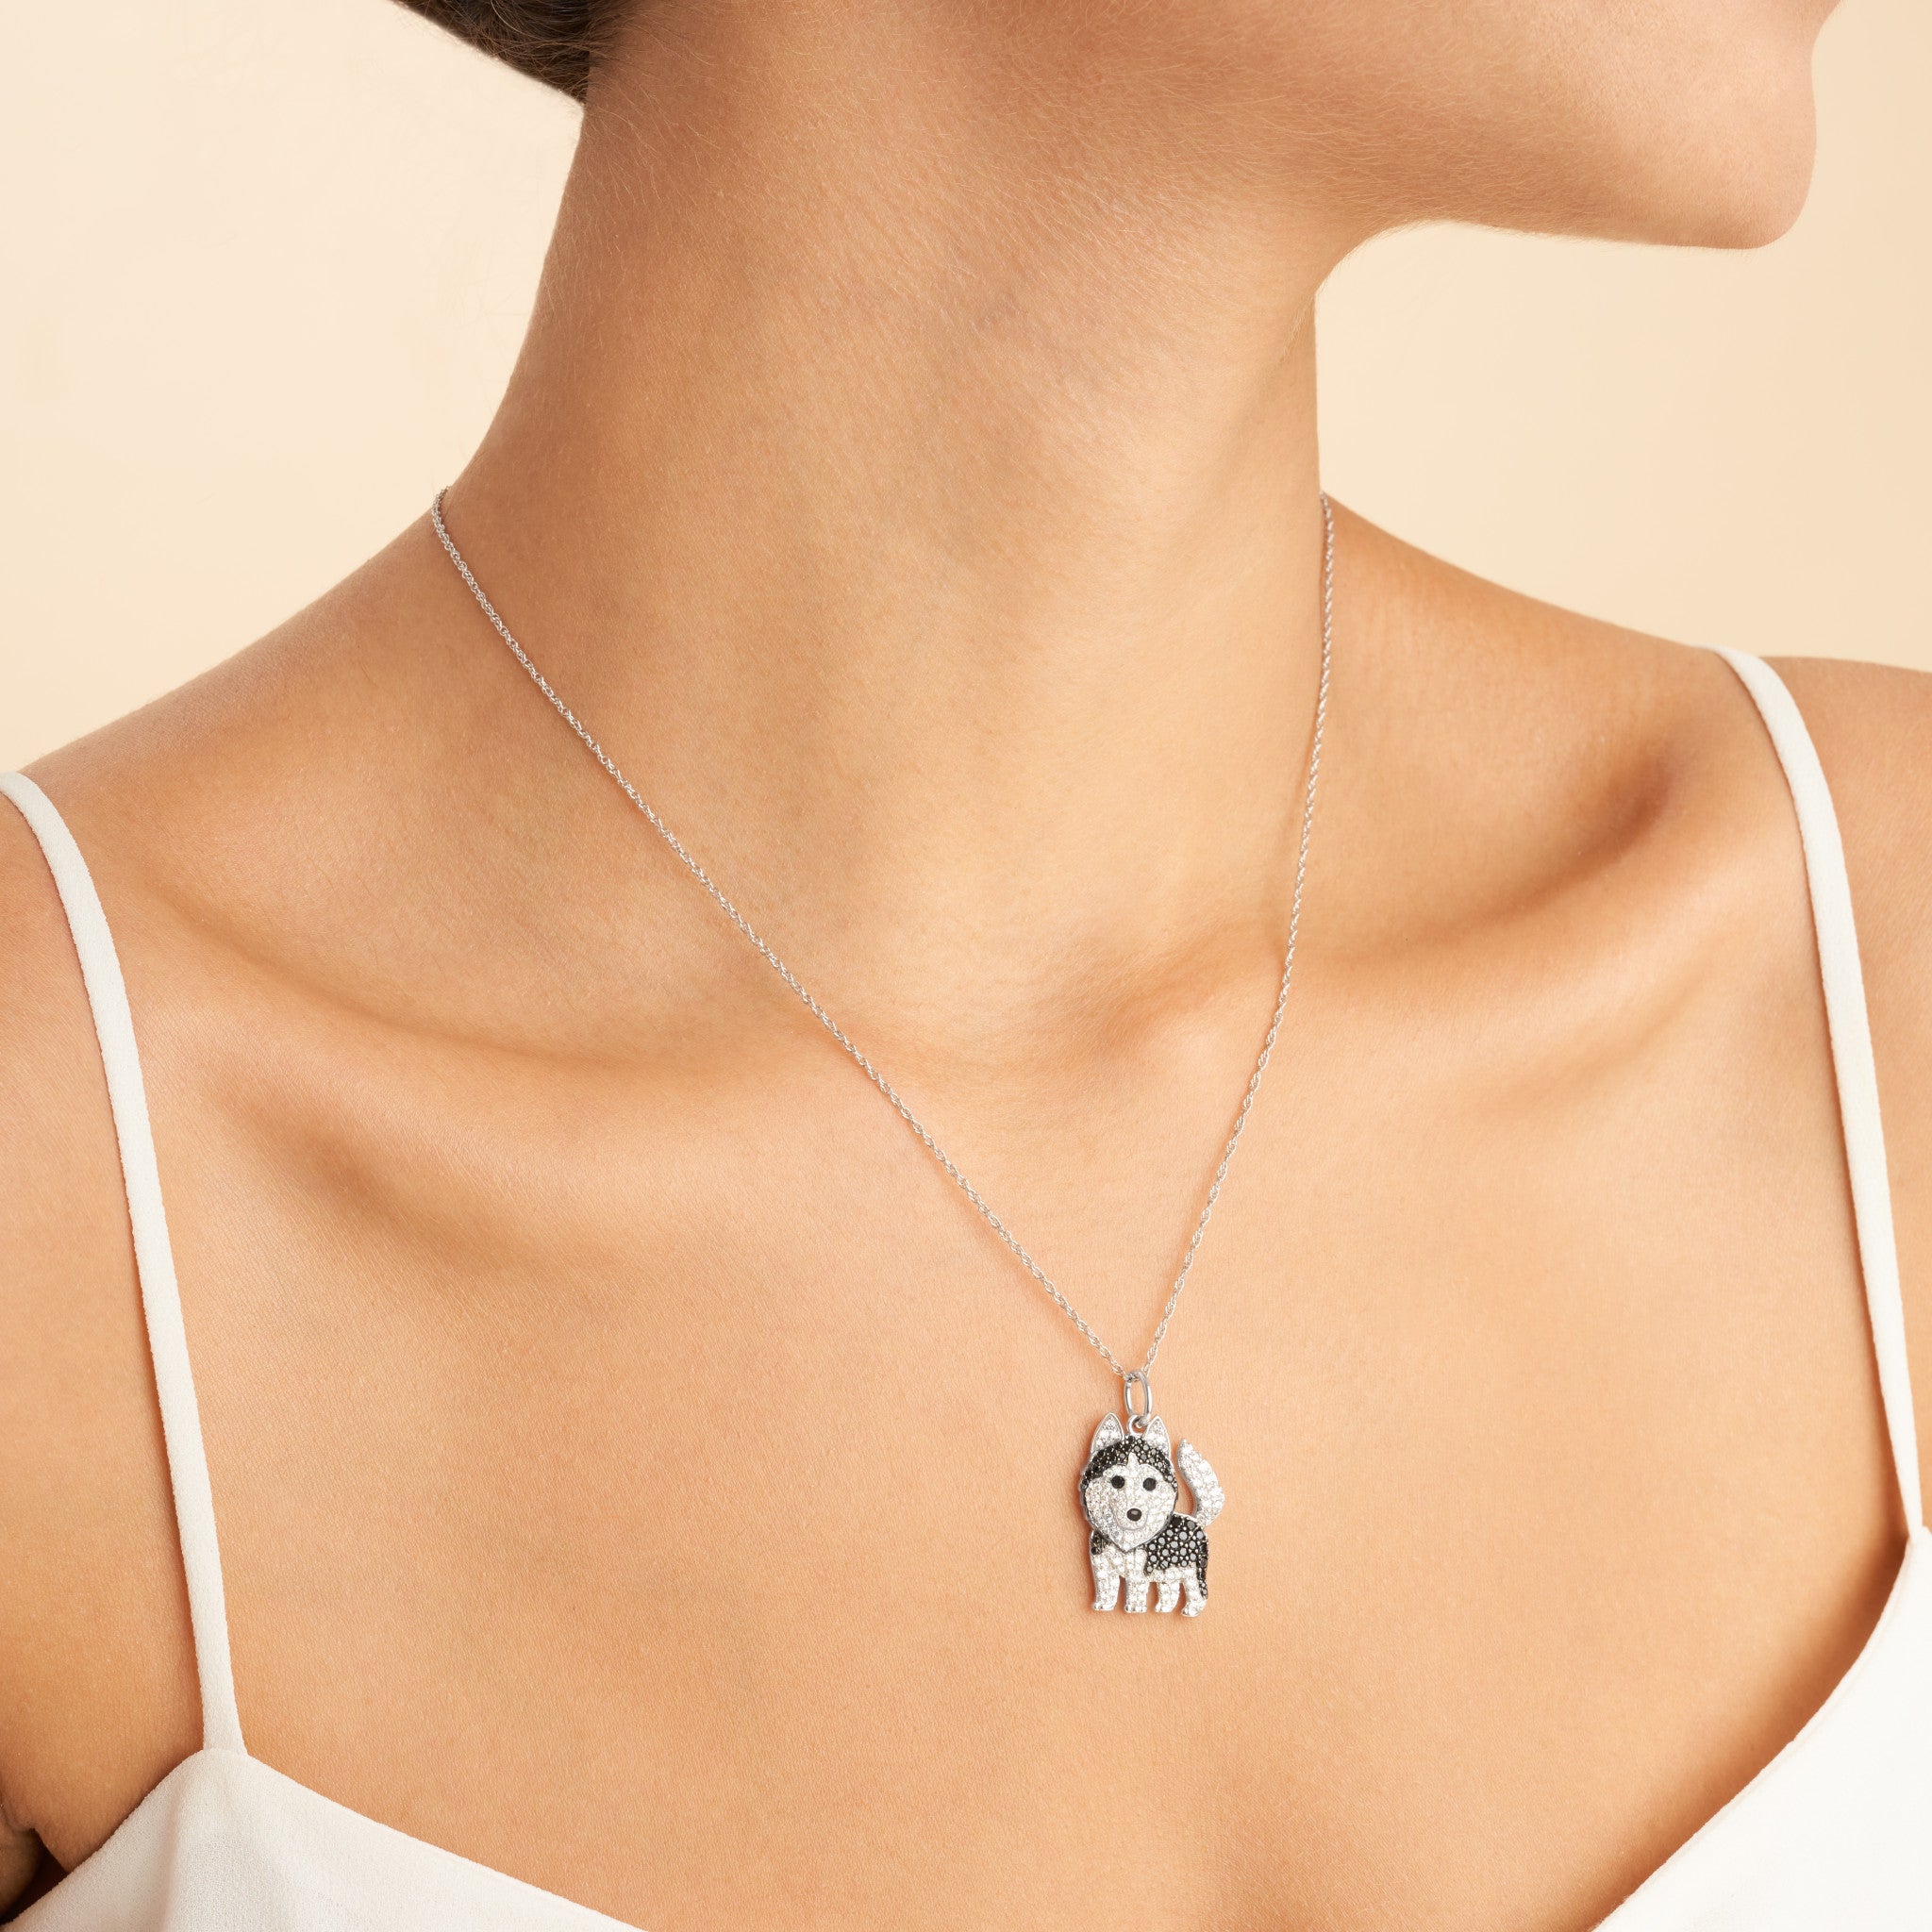 Siberian Husky Sterling Silver Pendant Necklace